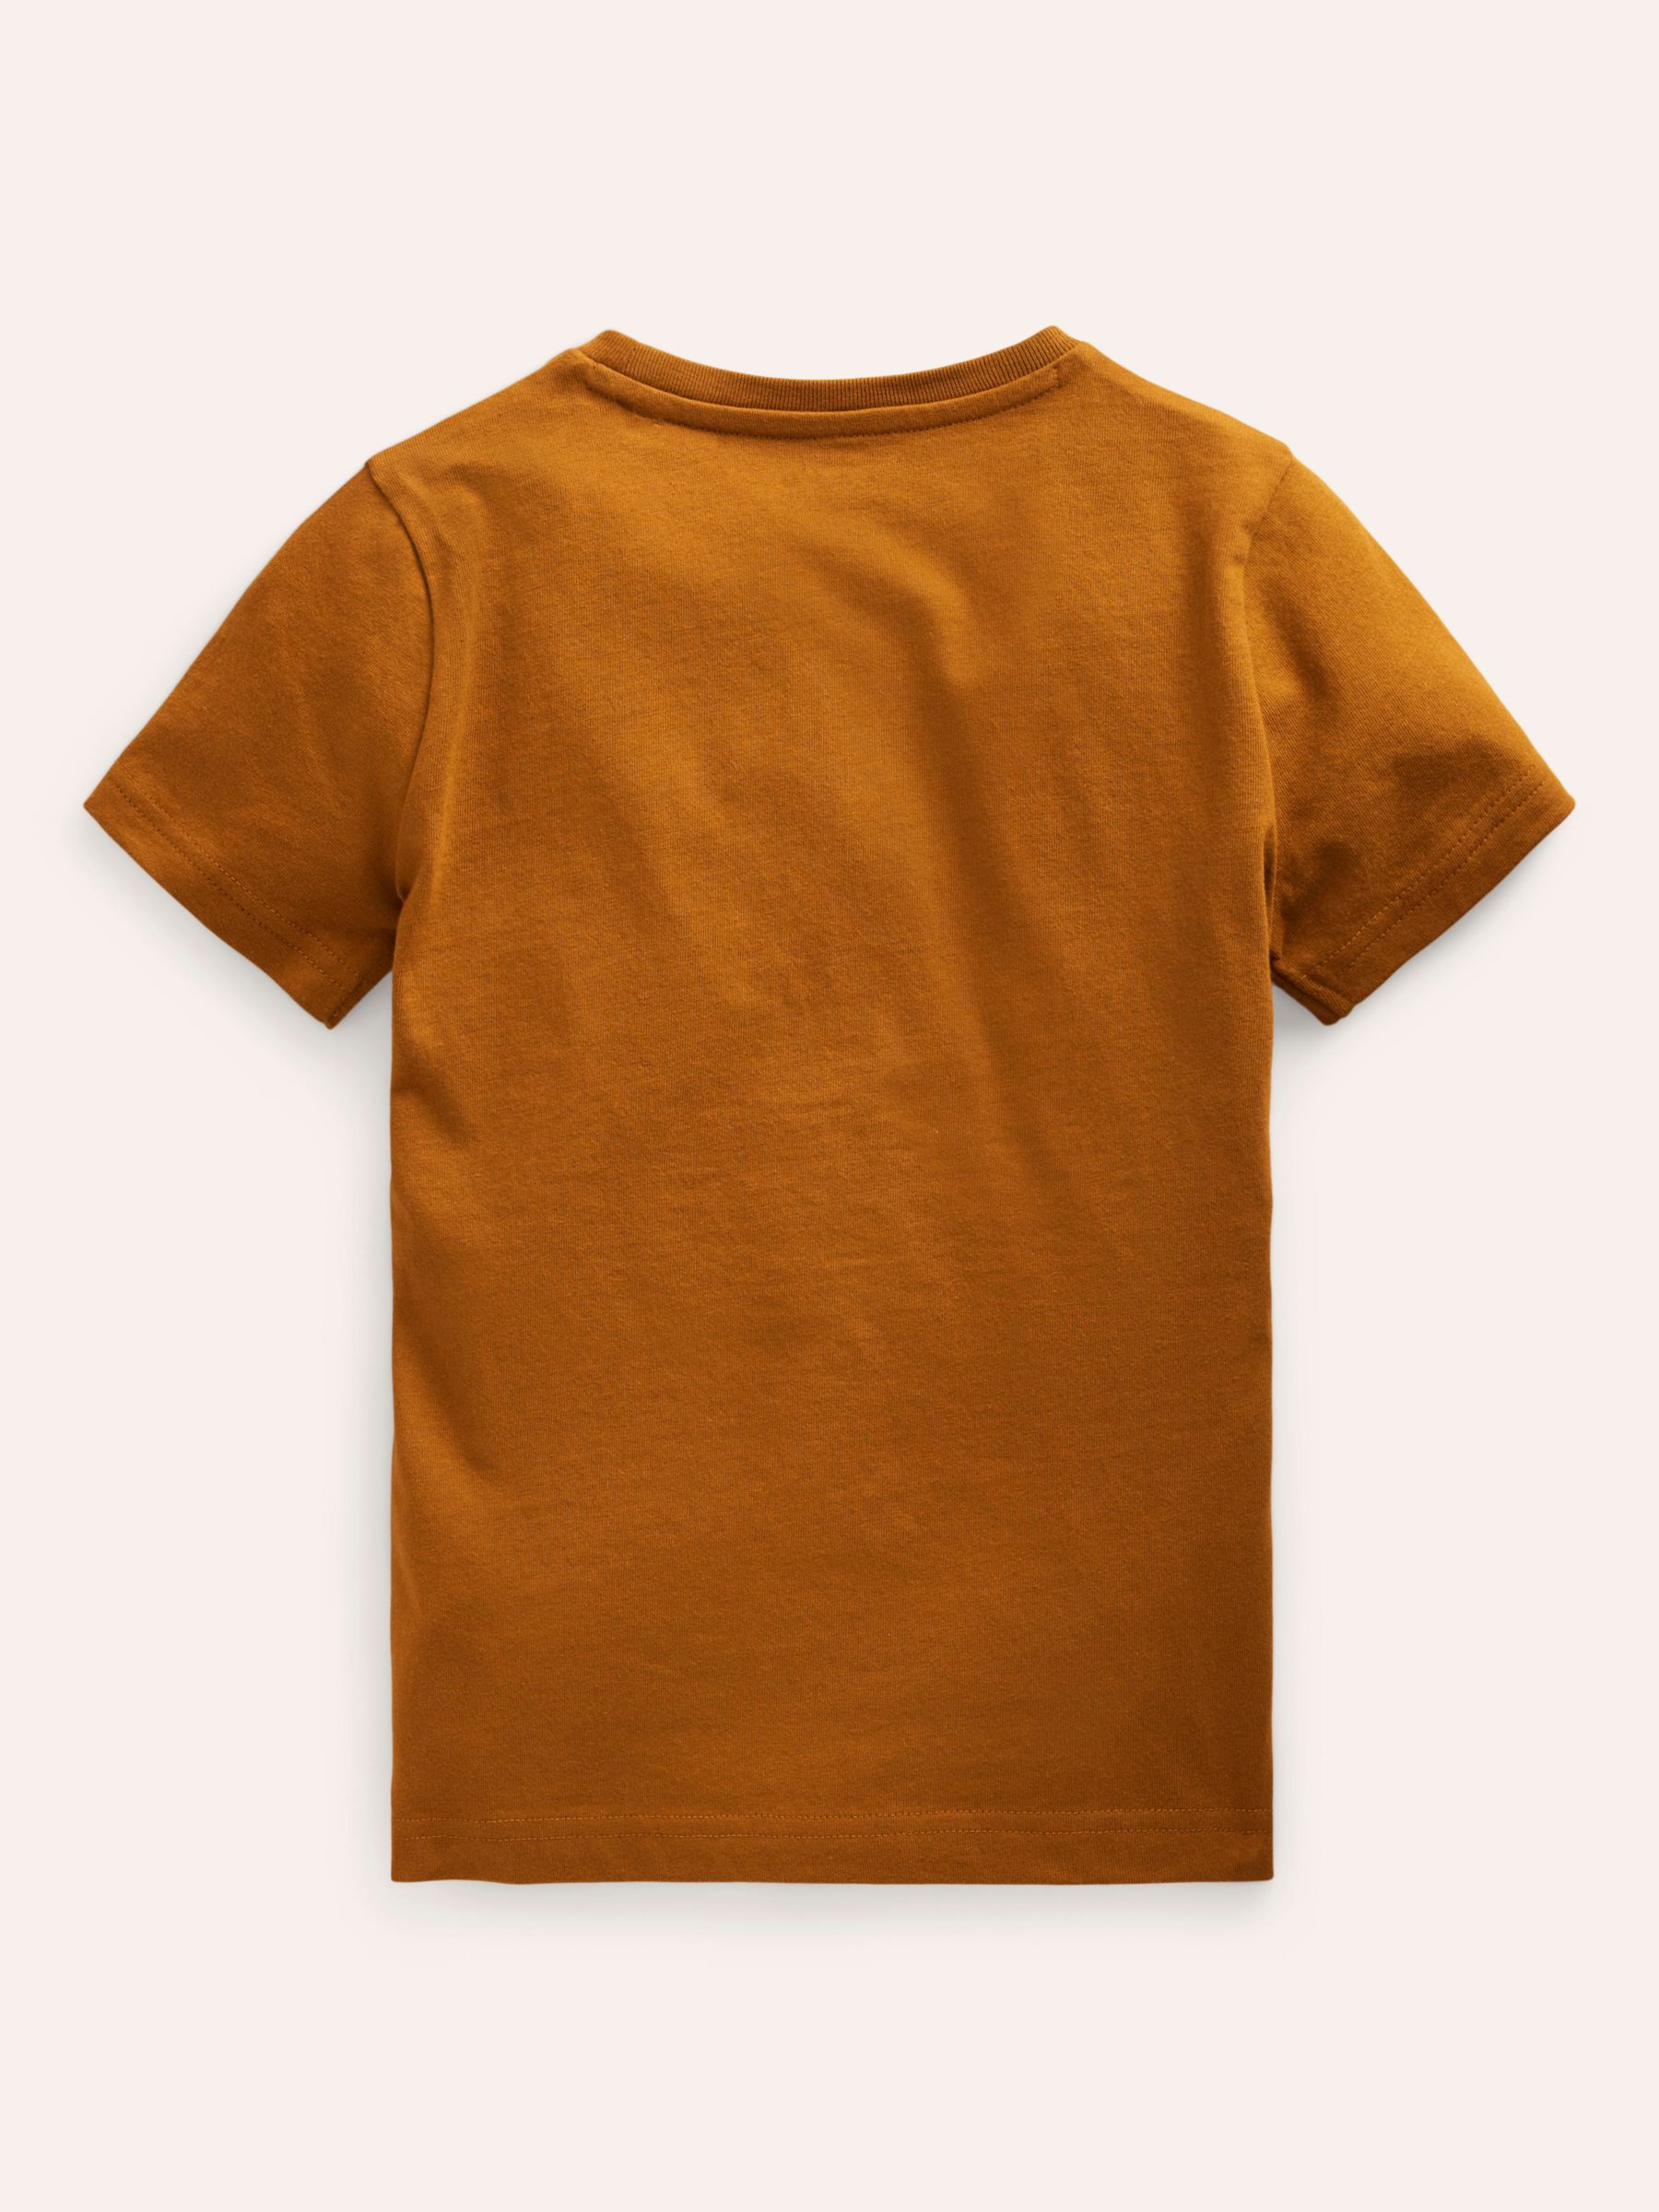 Mini Boden Kids' Lion Superstitch T-Shirt, Chestnut, 2-3 years